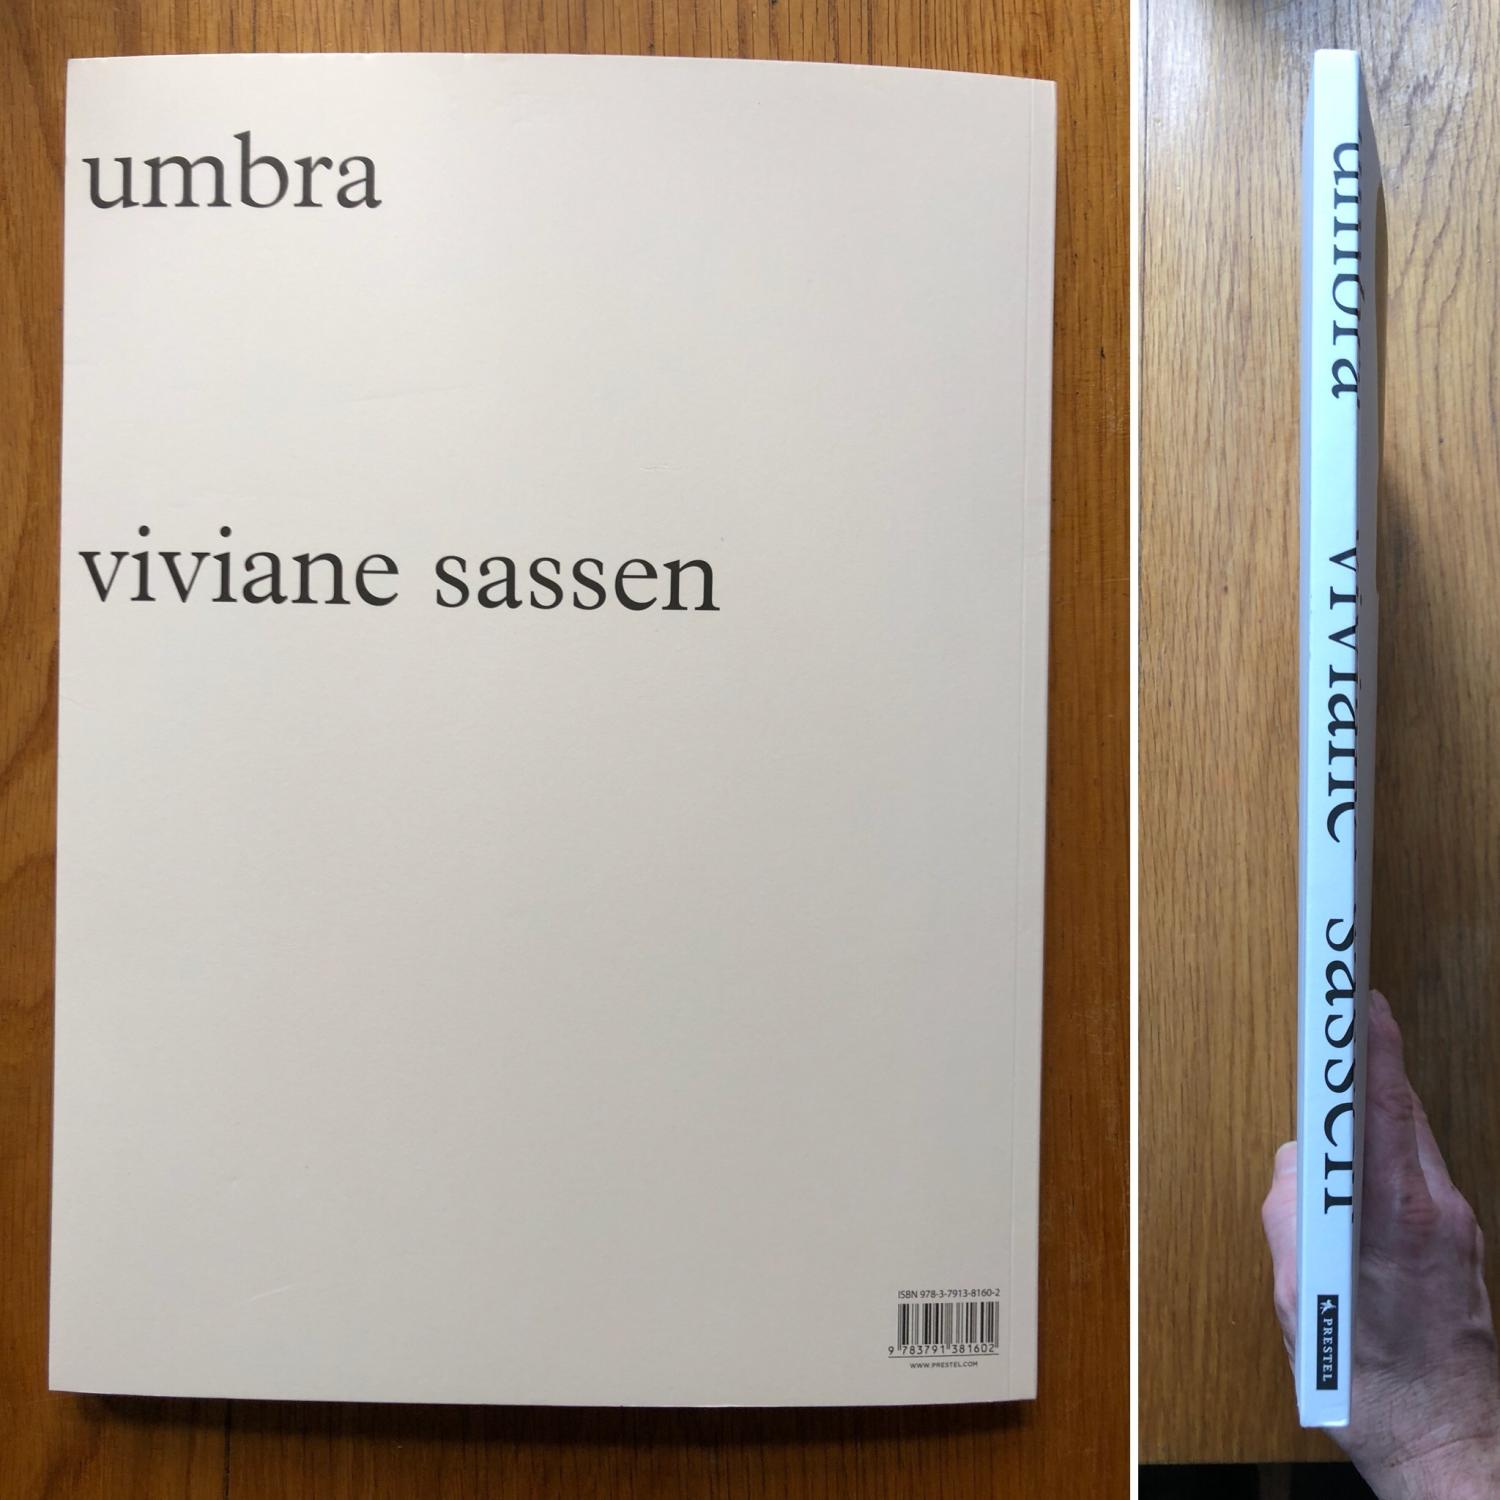 Umbra by Viviane Sassen